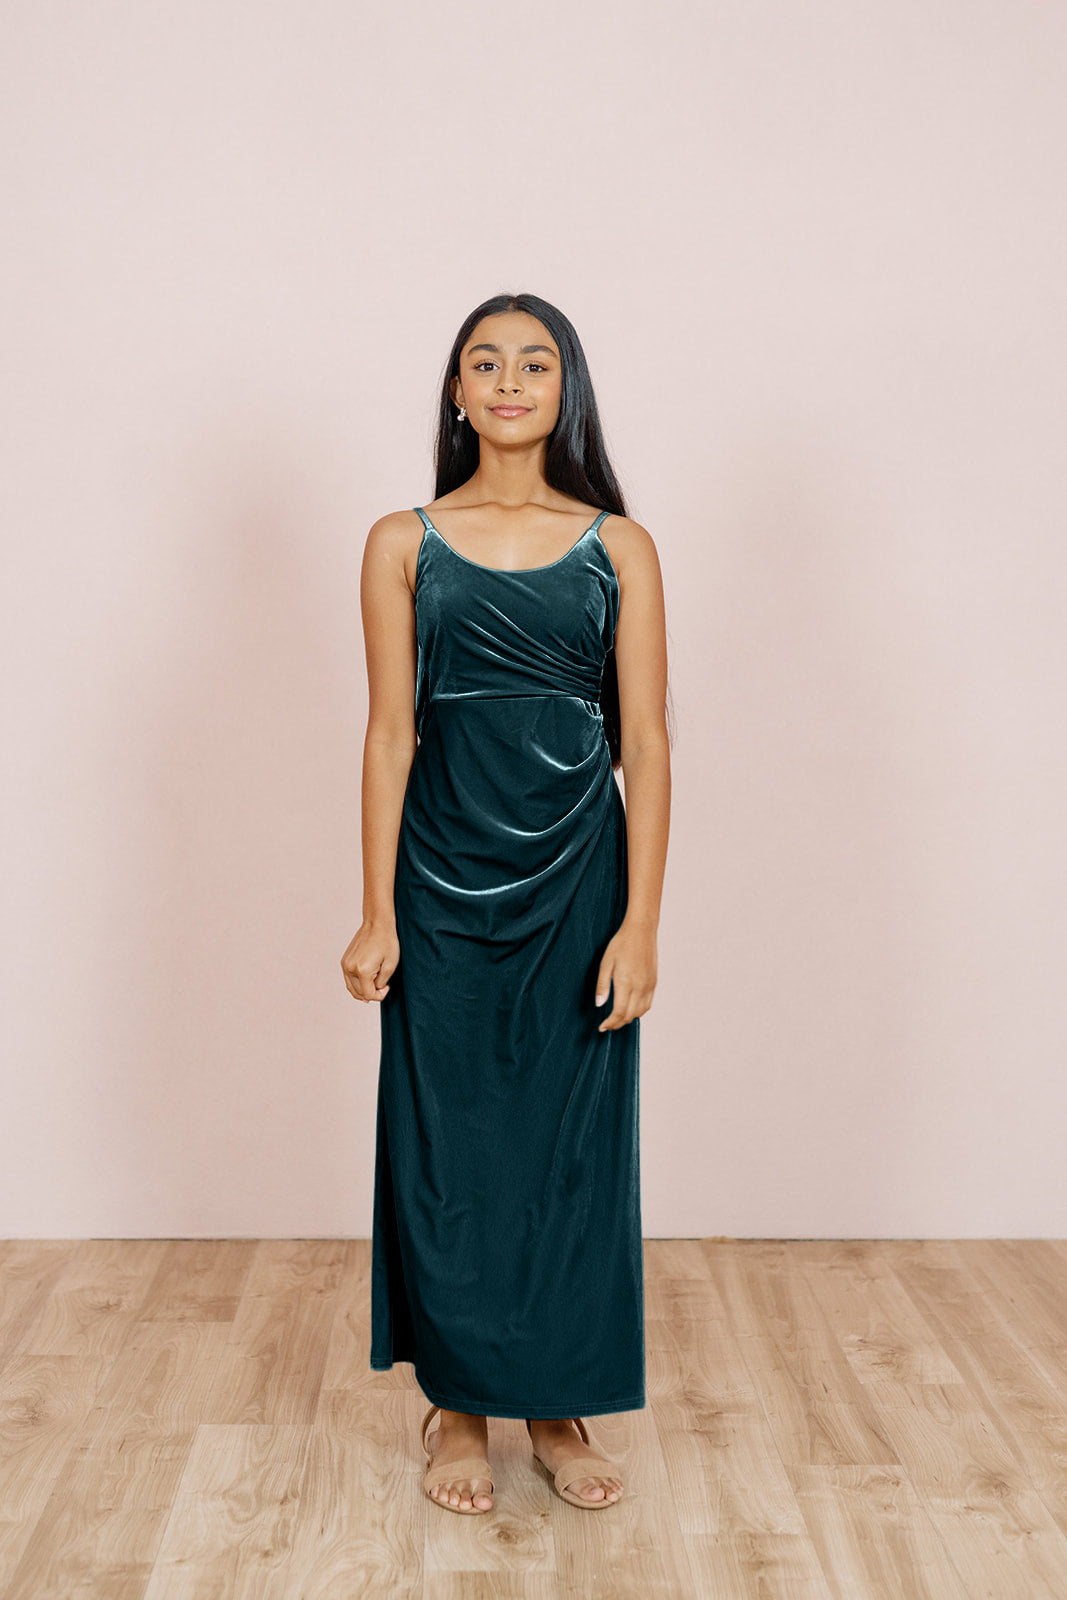 Rory Velvet Dress | Made To Order